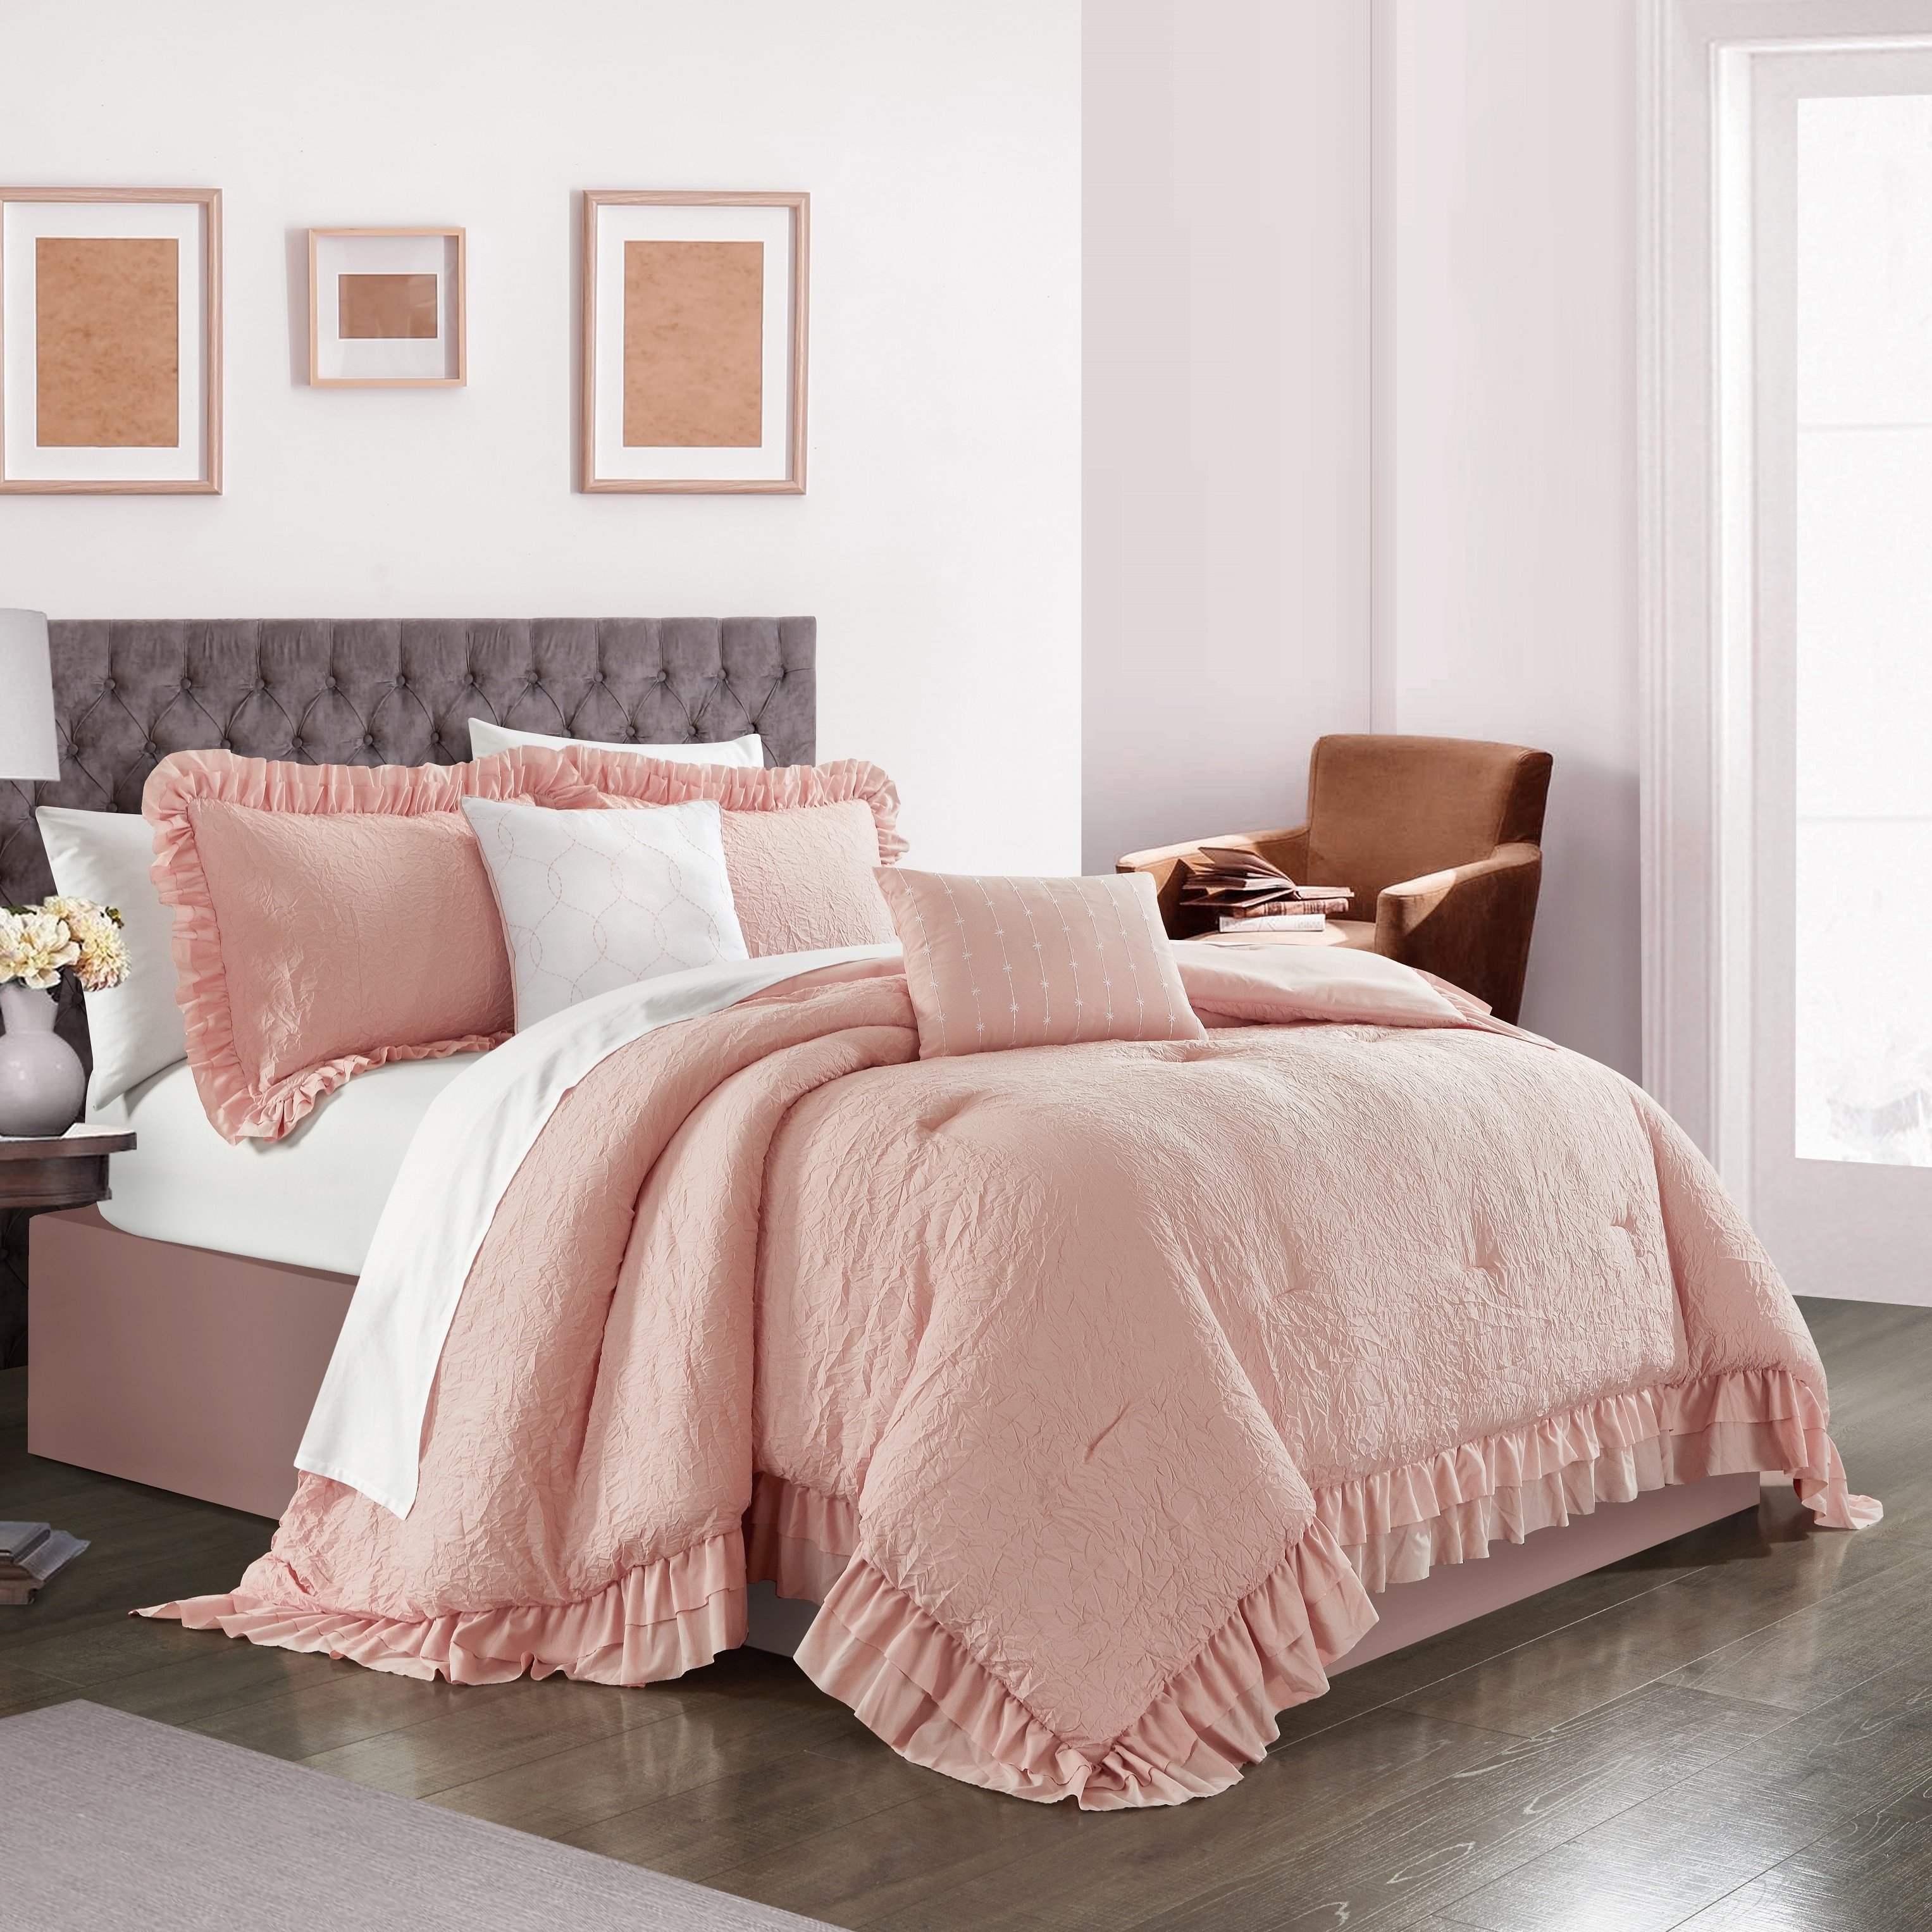 5 piece Kensley Comforter Set Washed Crinkle Ruffled Flange Border Design Bedding - Blush, Queen